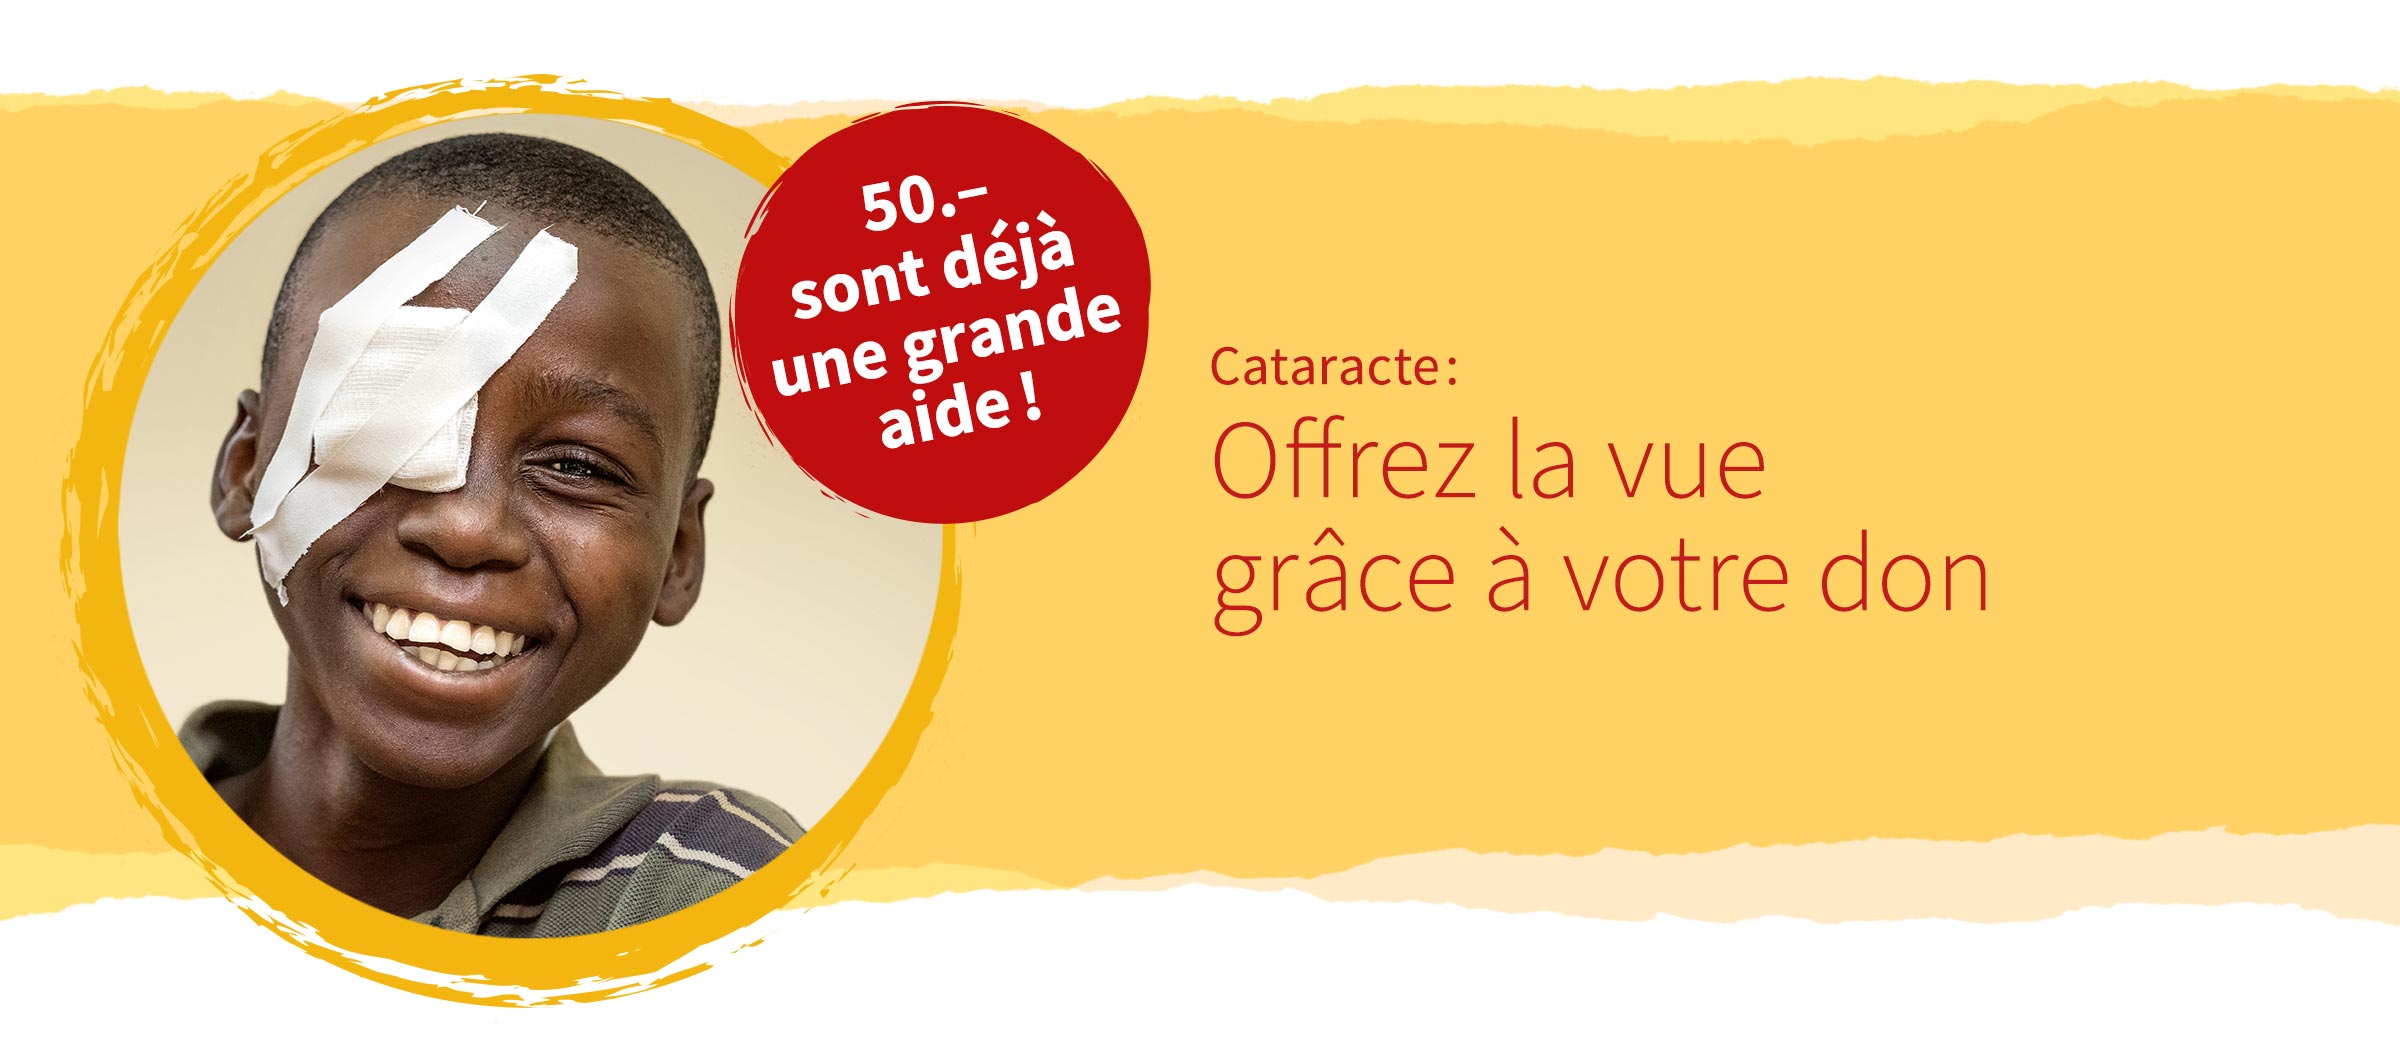 Cataracte: rendez la vue au moyen de votre don! Déjà 50 francs peuvent aider!»